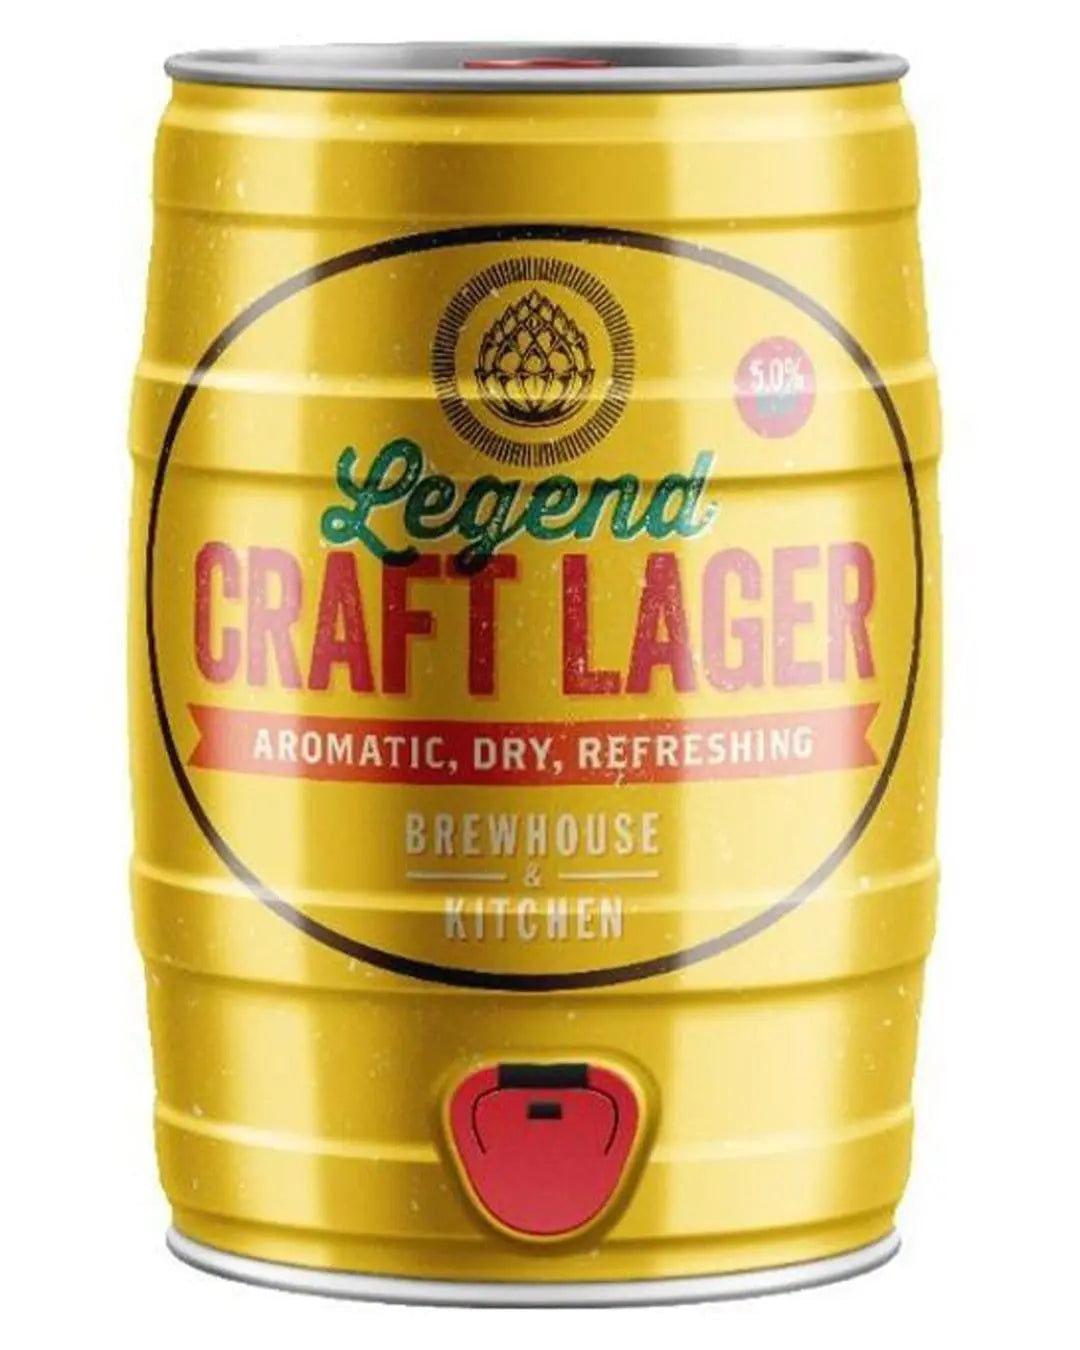 Legend Craft Lager Mini Keg, 5 L Beer